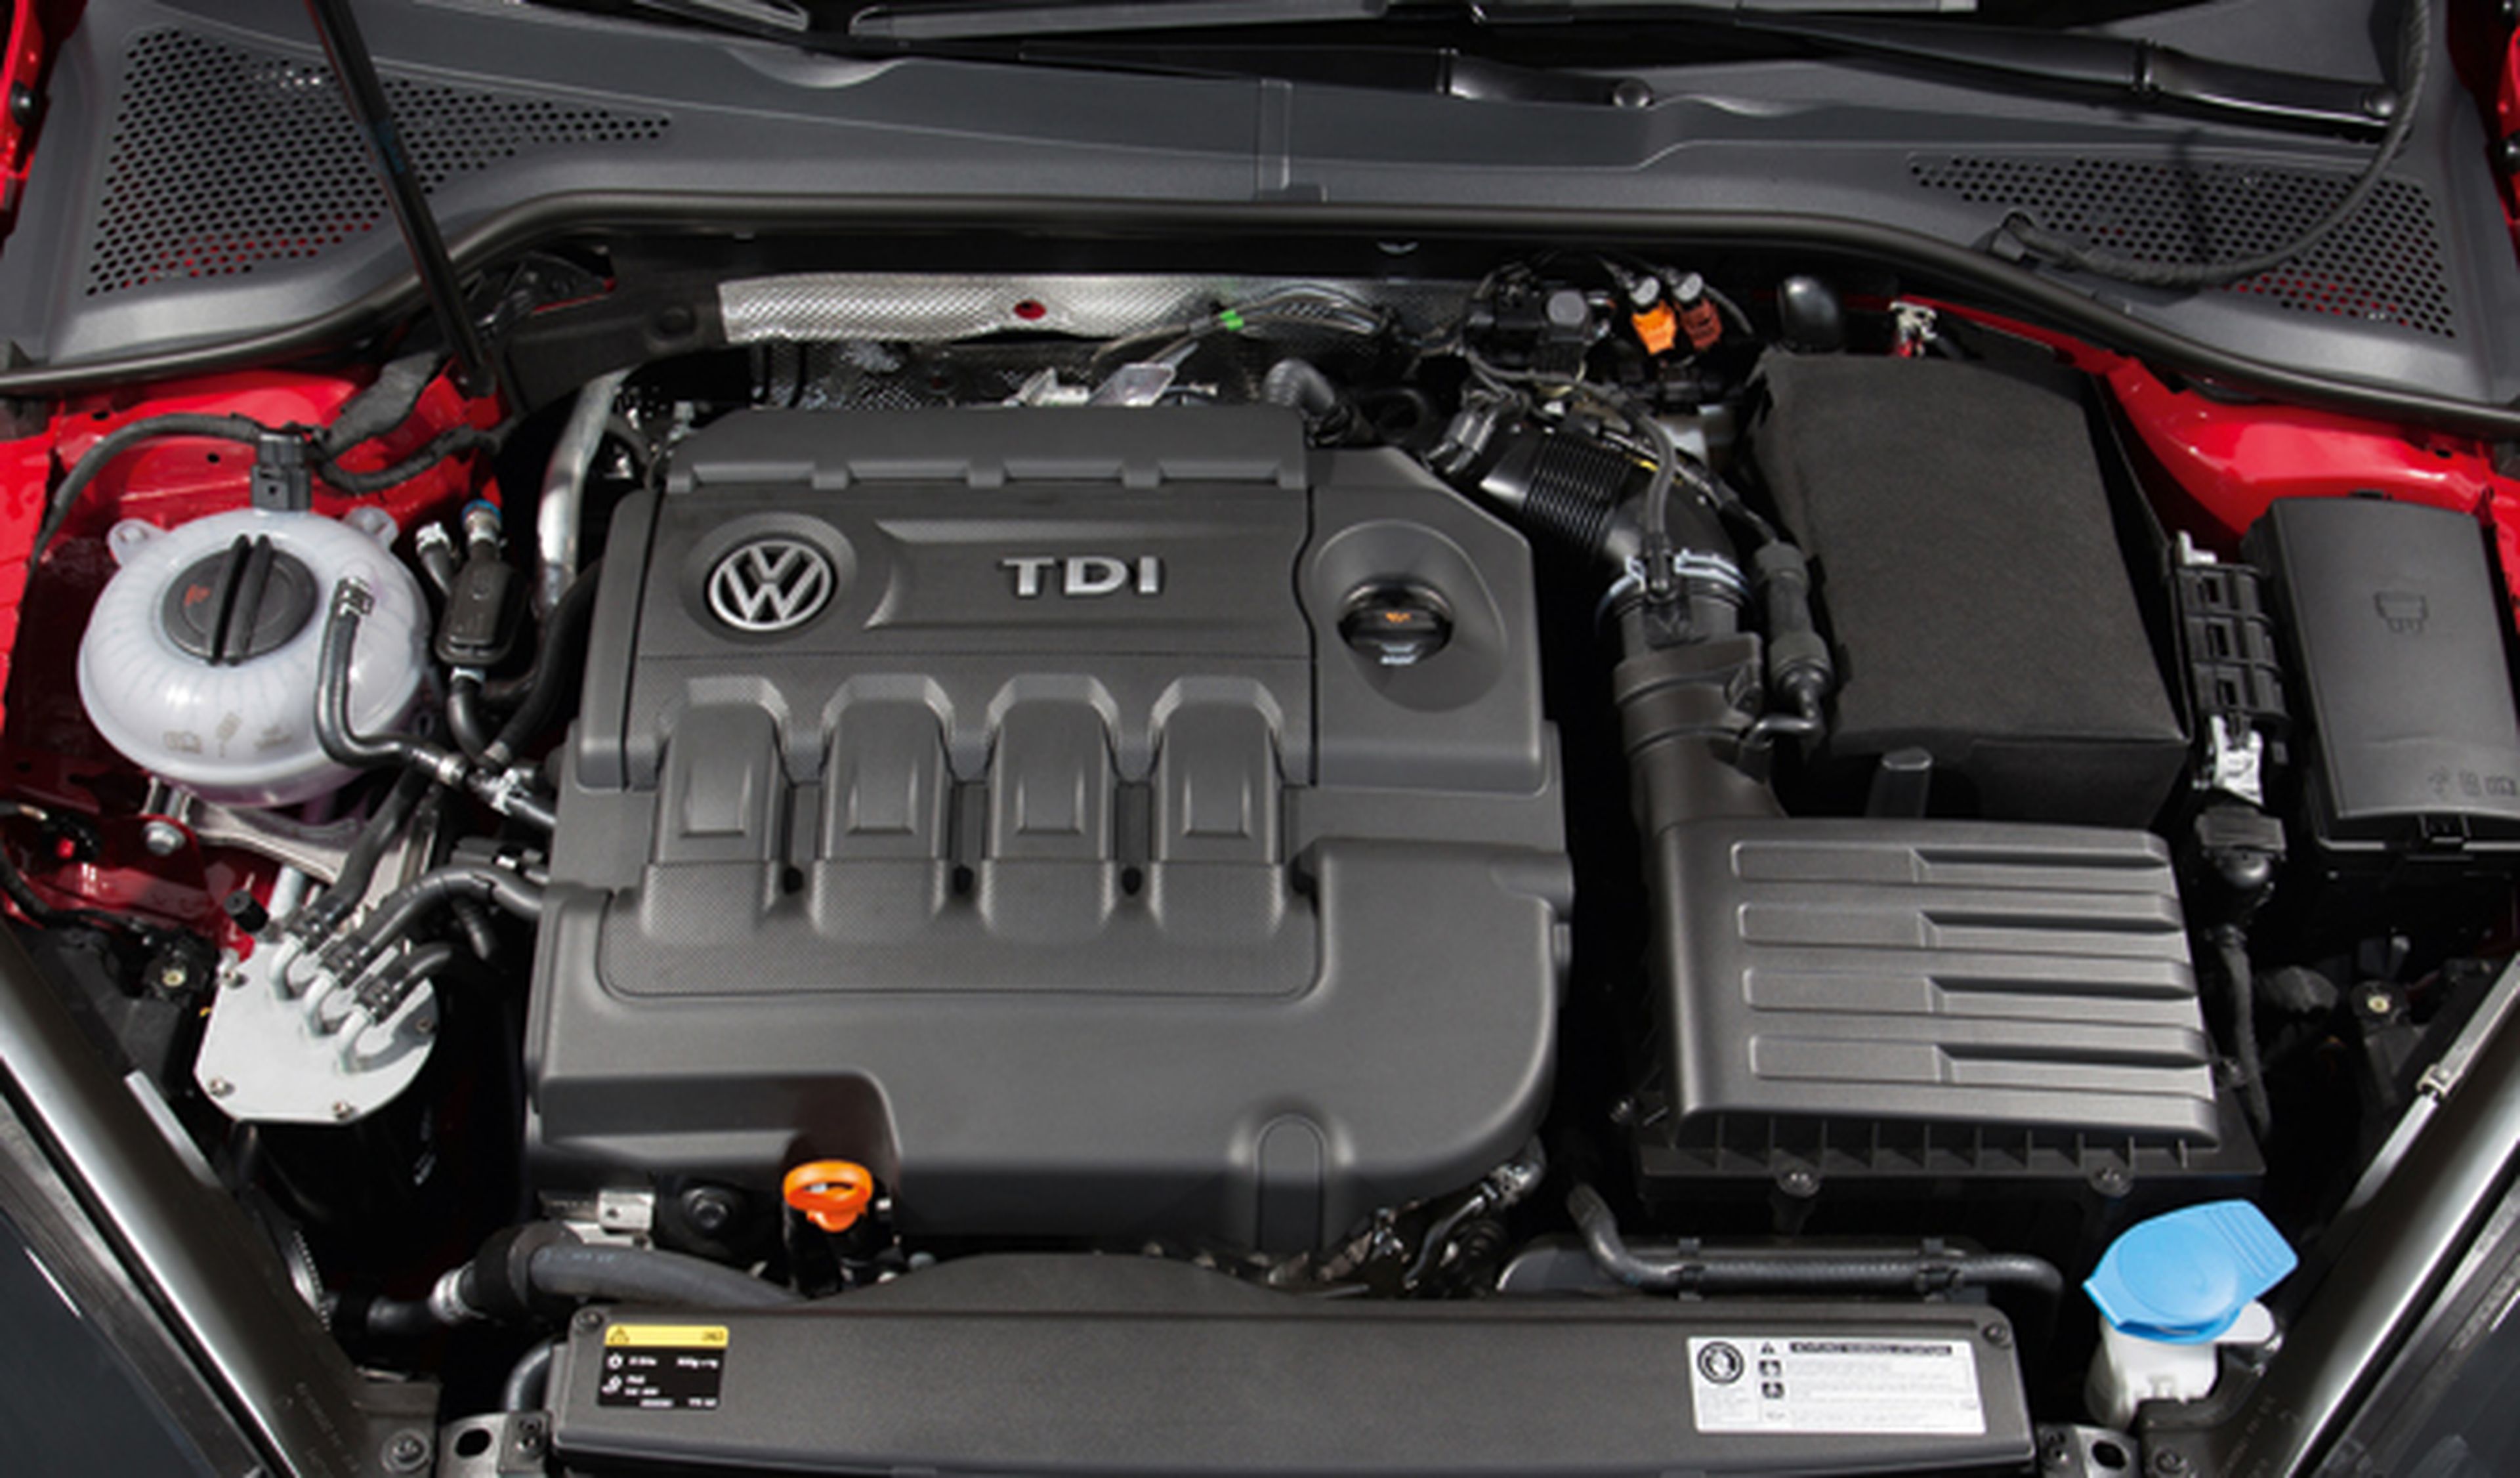 VW llama a revisión al Passat por un problema eléctrico